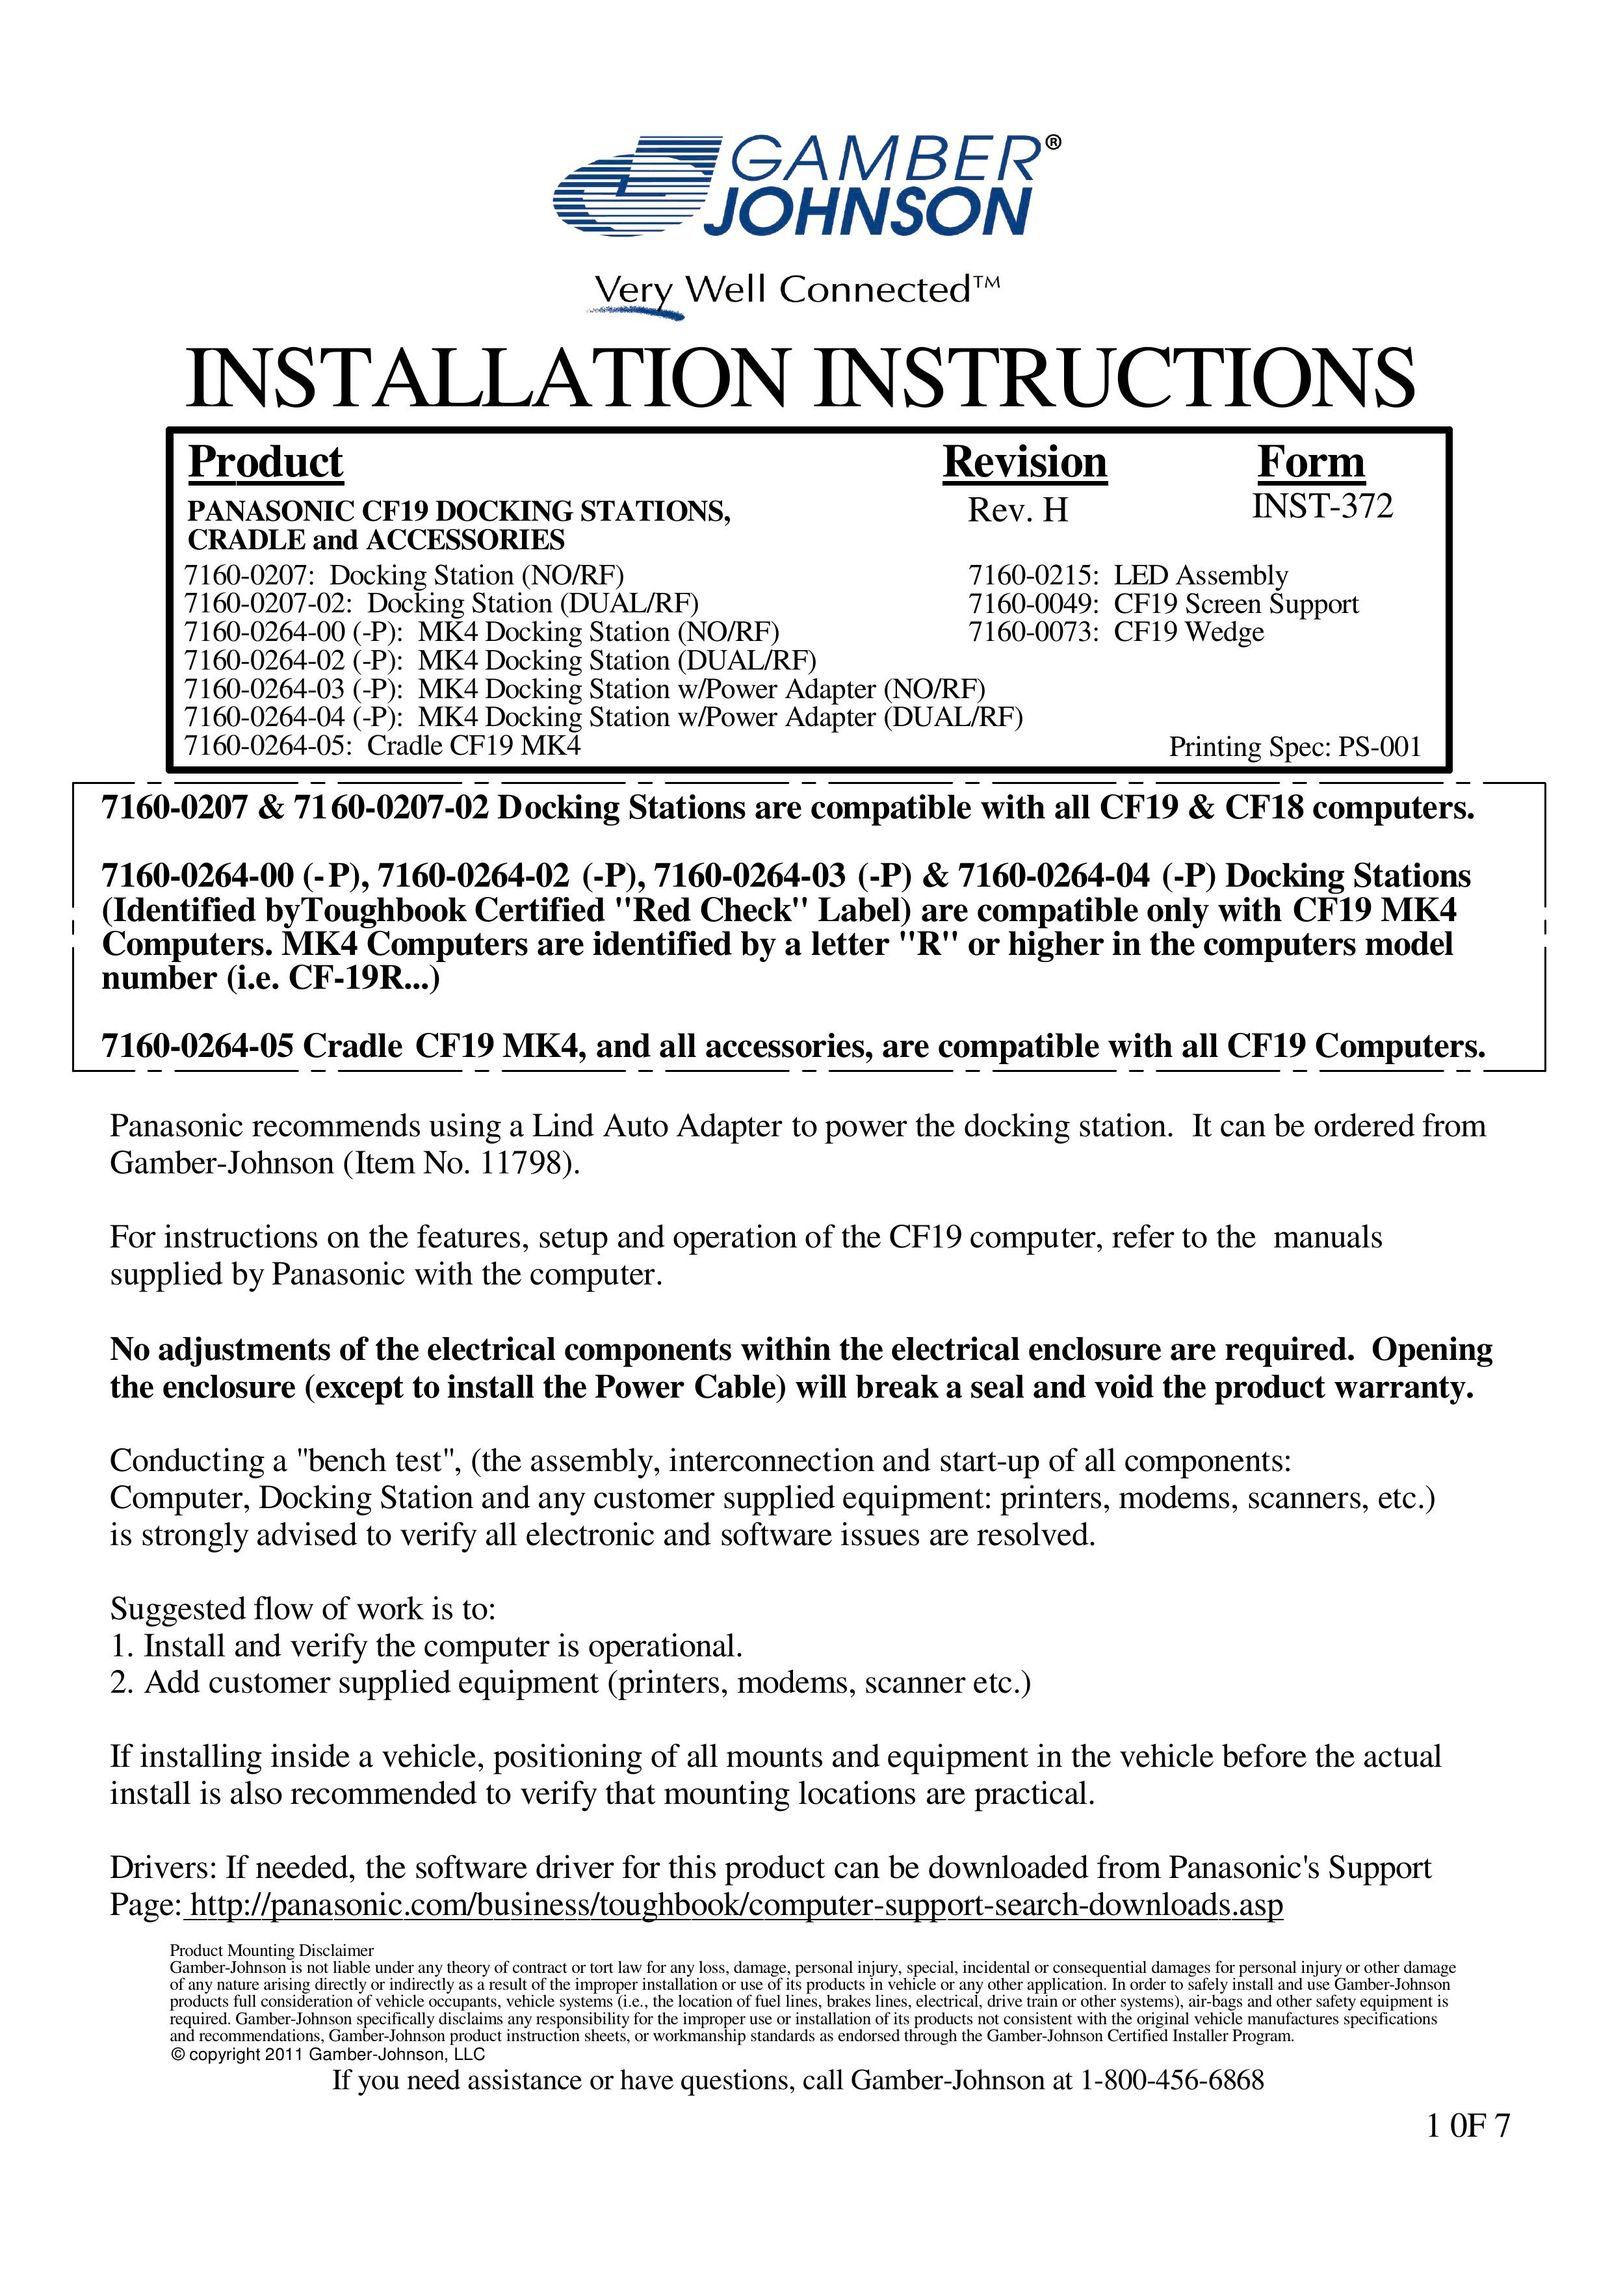 Gamber Johnson 7160-0207-02 Laptop Docking Station User Manual